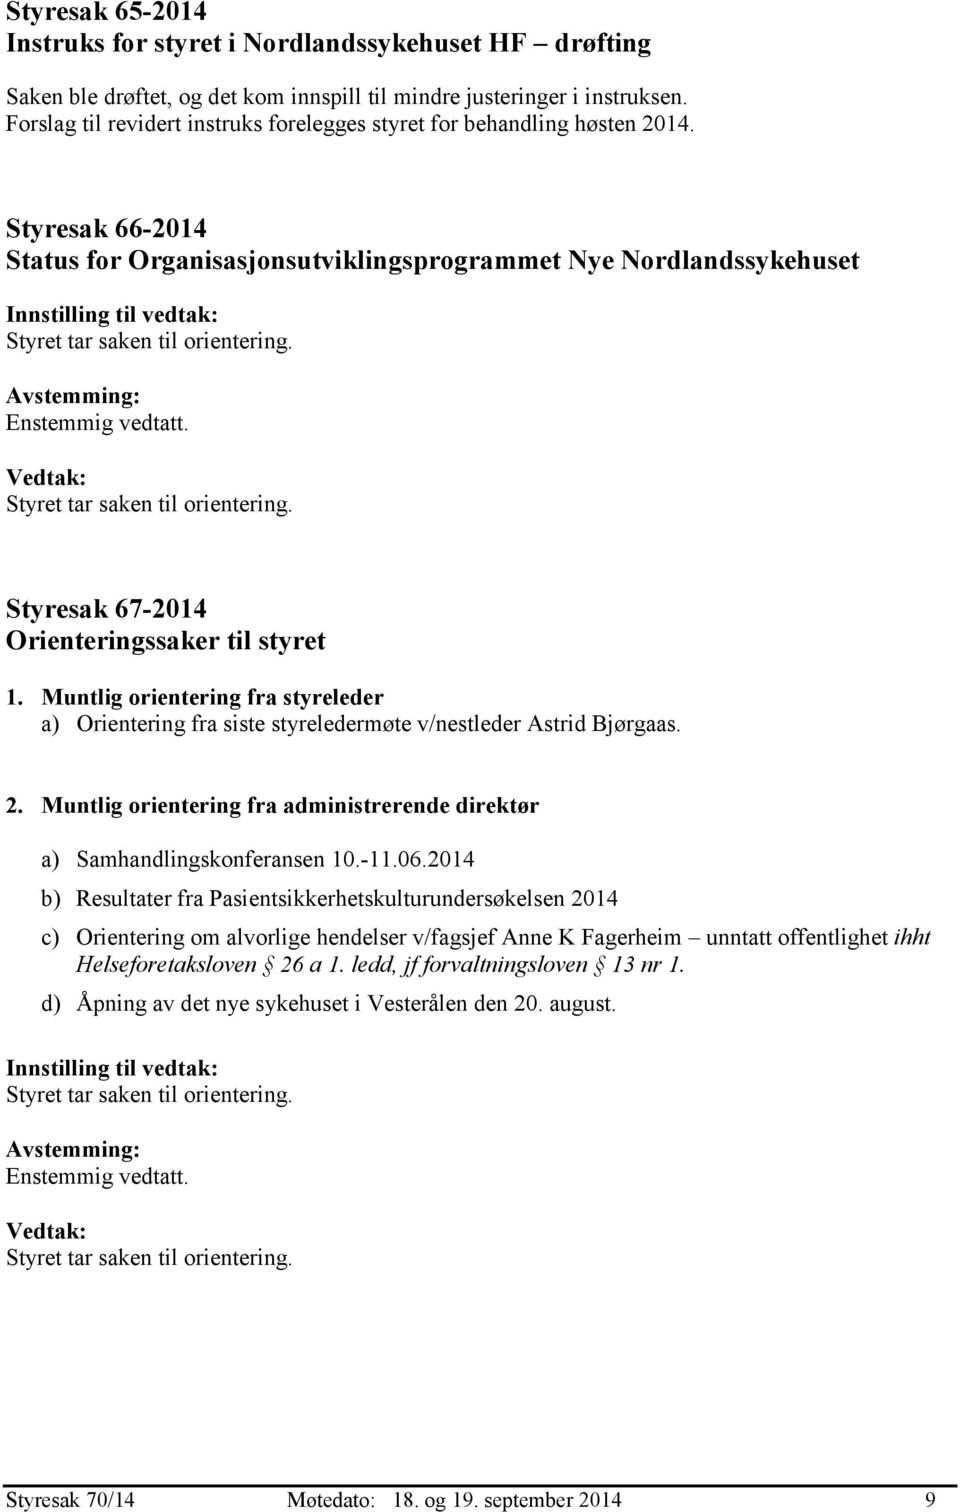 Styresak 66-2014 Status for Organisasjonsutviklingsprogrammet Nye Nordlandssykehuset Styresak 67-2014 Orienteringssaker til styret 1.